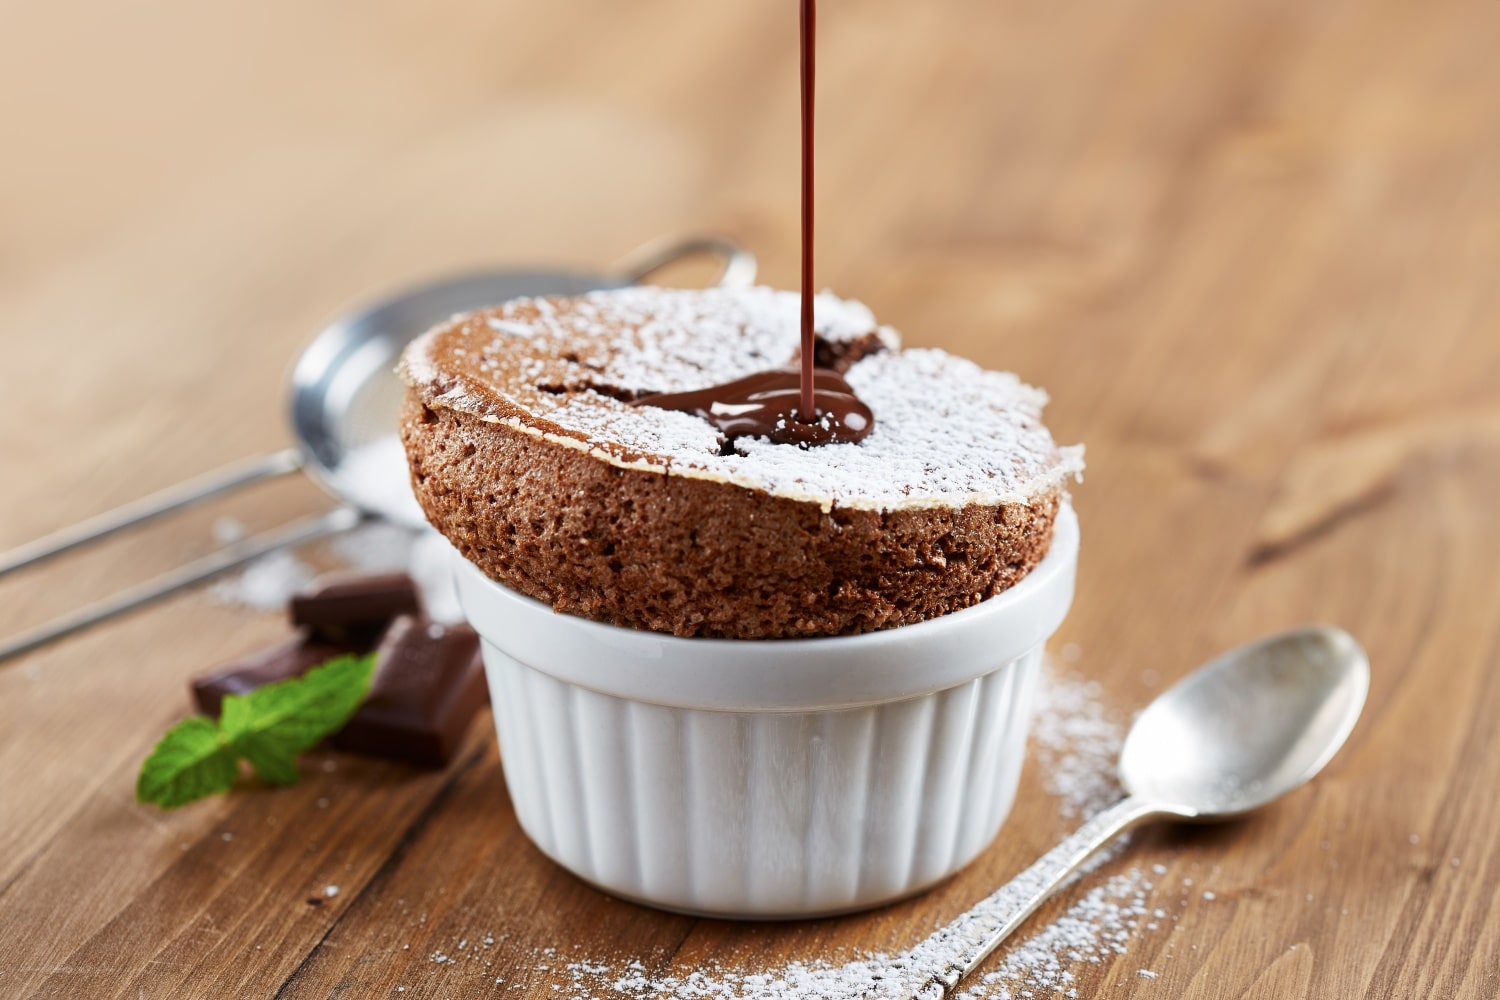 A csokis csoda – Pofonegyszerű csokiszuflé recept, amit neked is ismerned kell